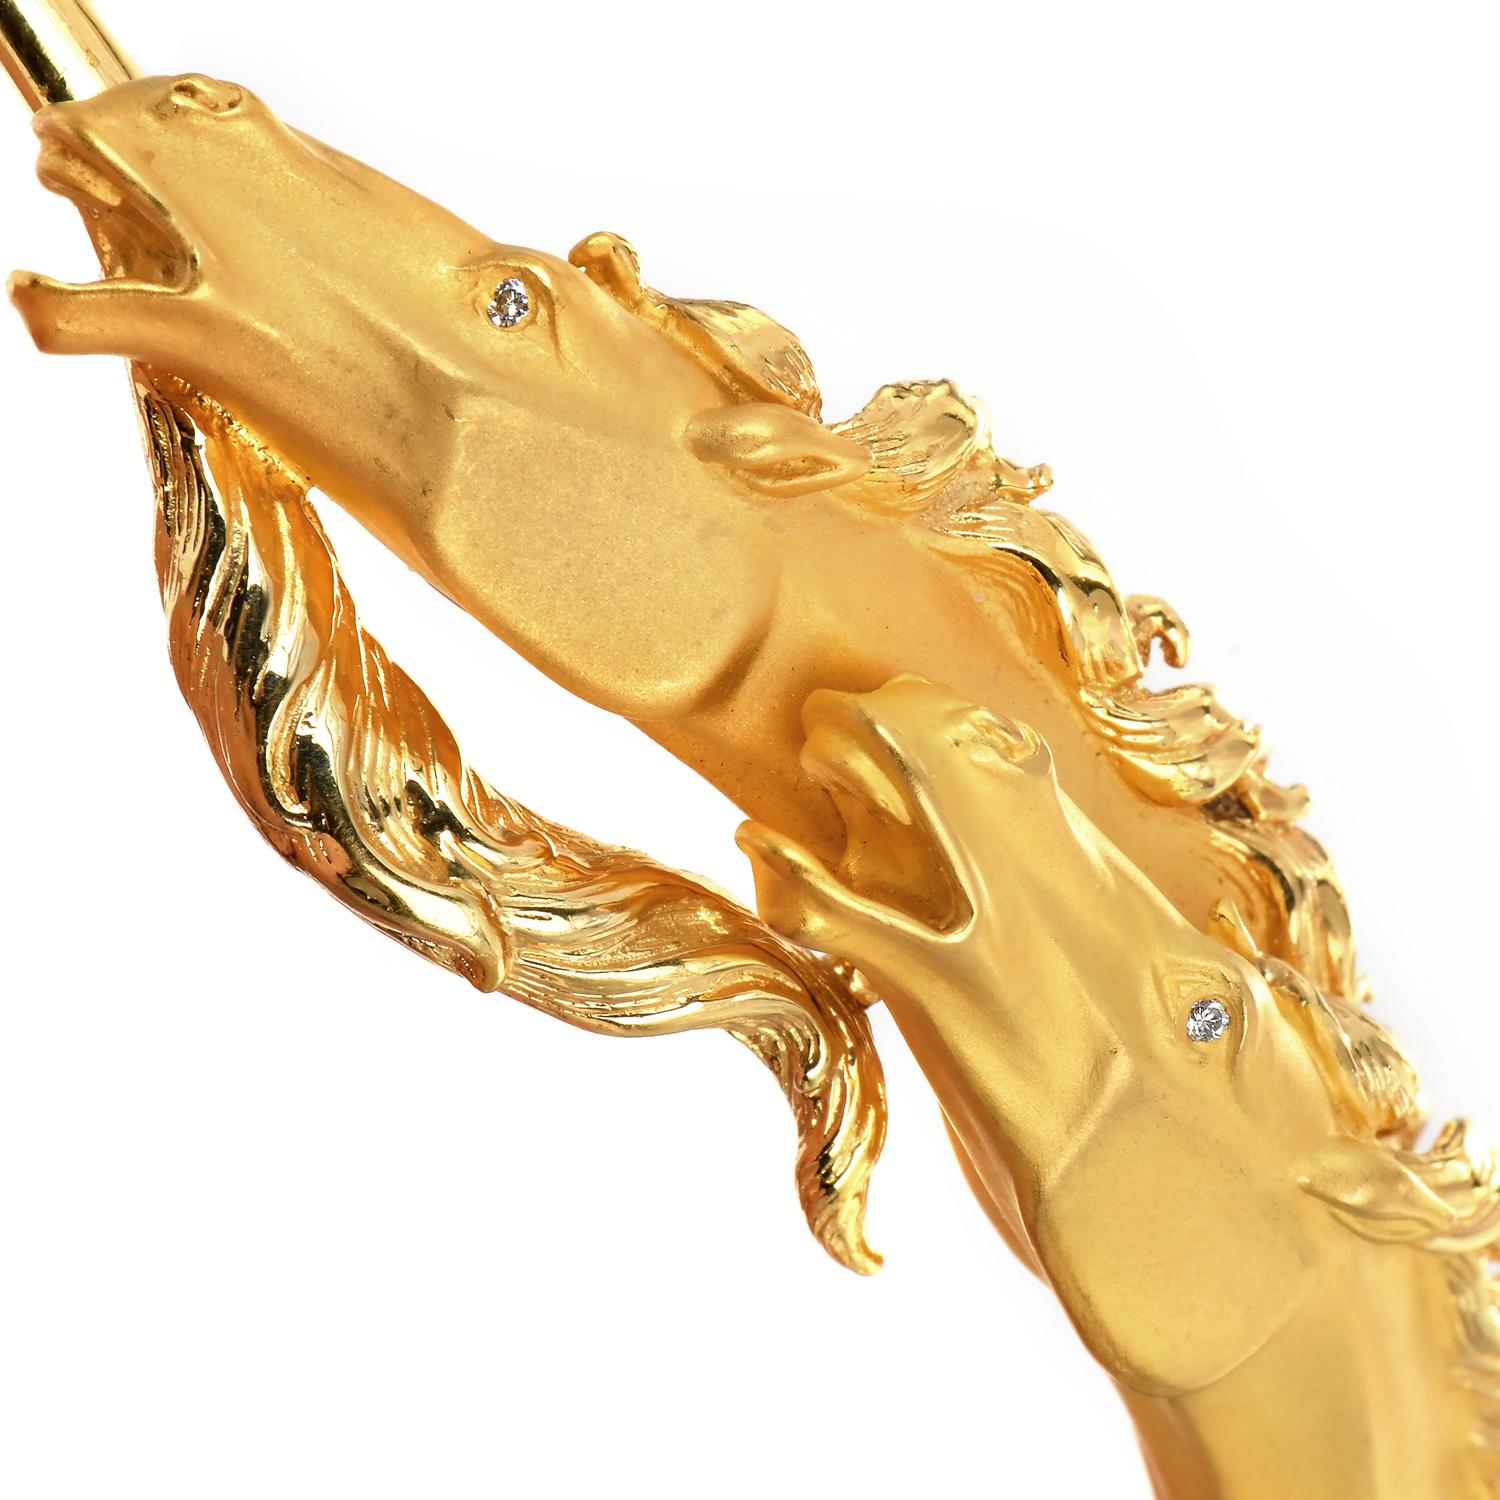 Exquisites Carrera Y Carrera-Armband. Er wird in Spanien aus 18-karätigem Gelbgold gefertigt und mit einer matten, satinierten Oberfläche versehen.

Das Motiv des doppelten Hosenkopfes ist ein inspiriertes Design mit einer strukturierten, matten